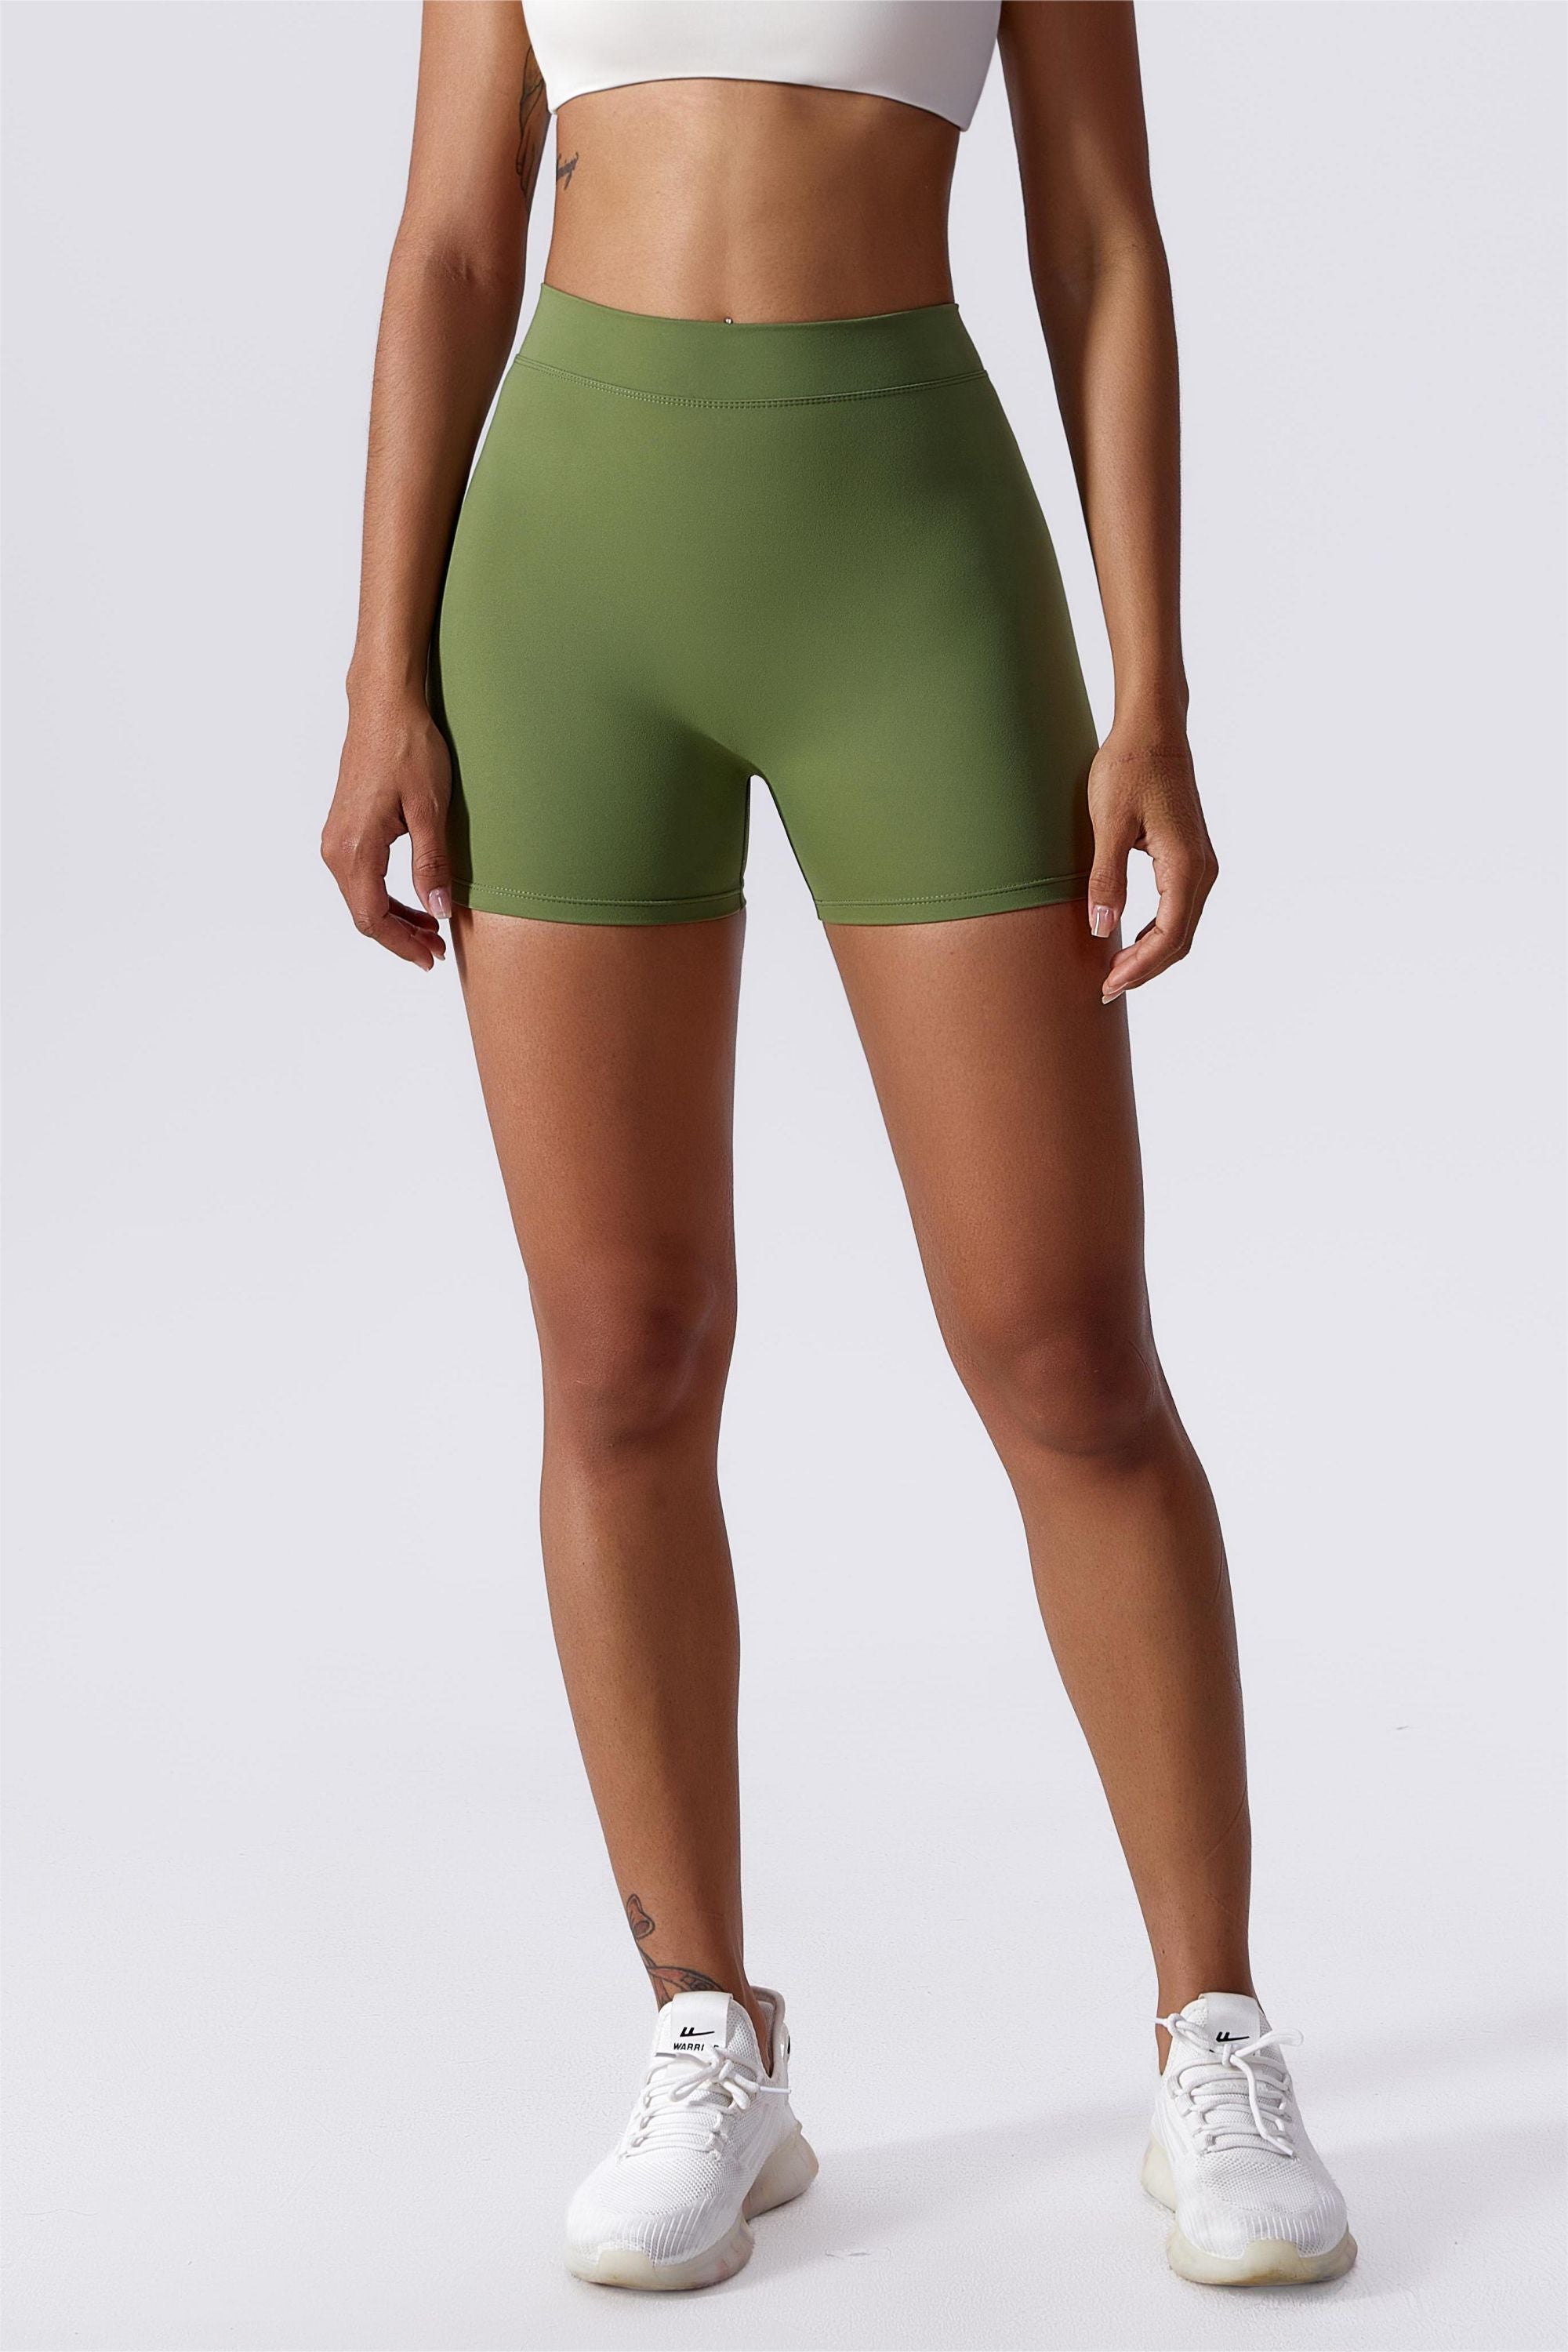 Pchee Pro Olive Scrunch Butt Shorts